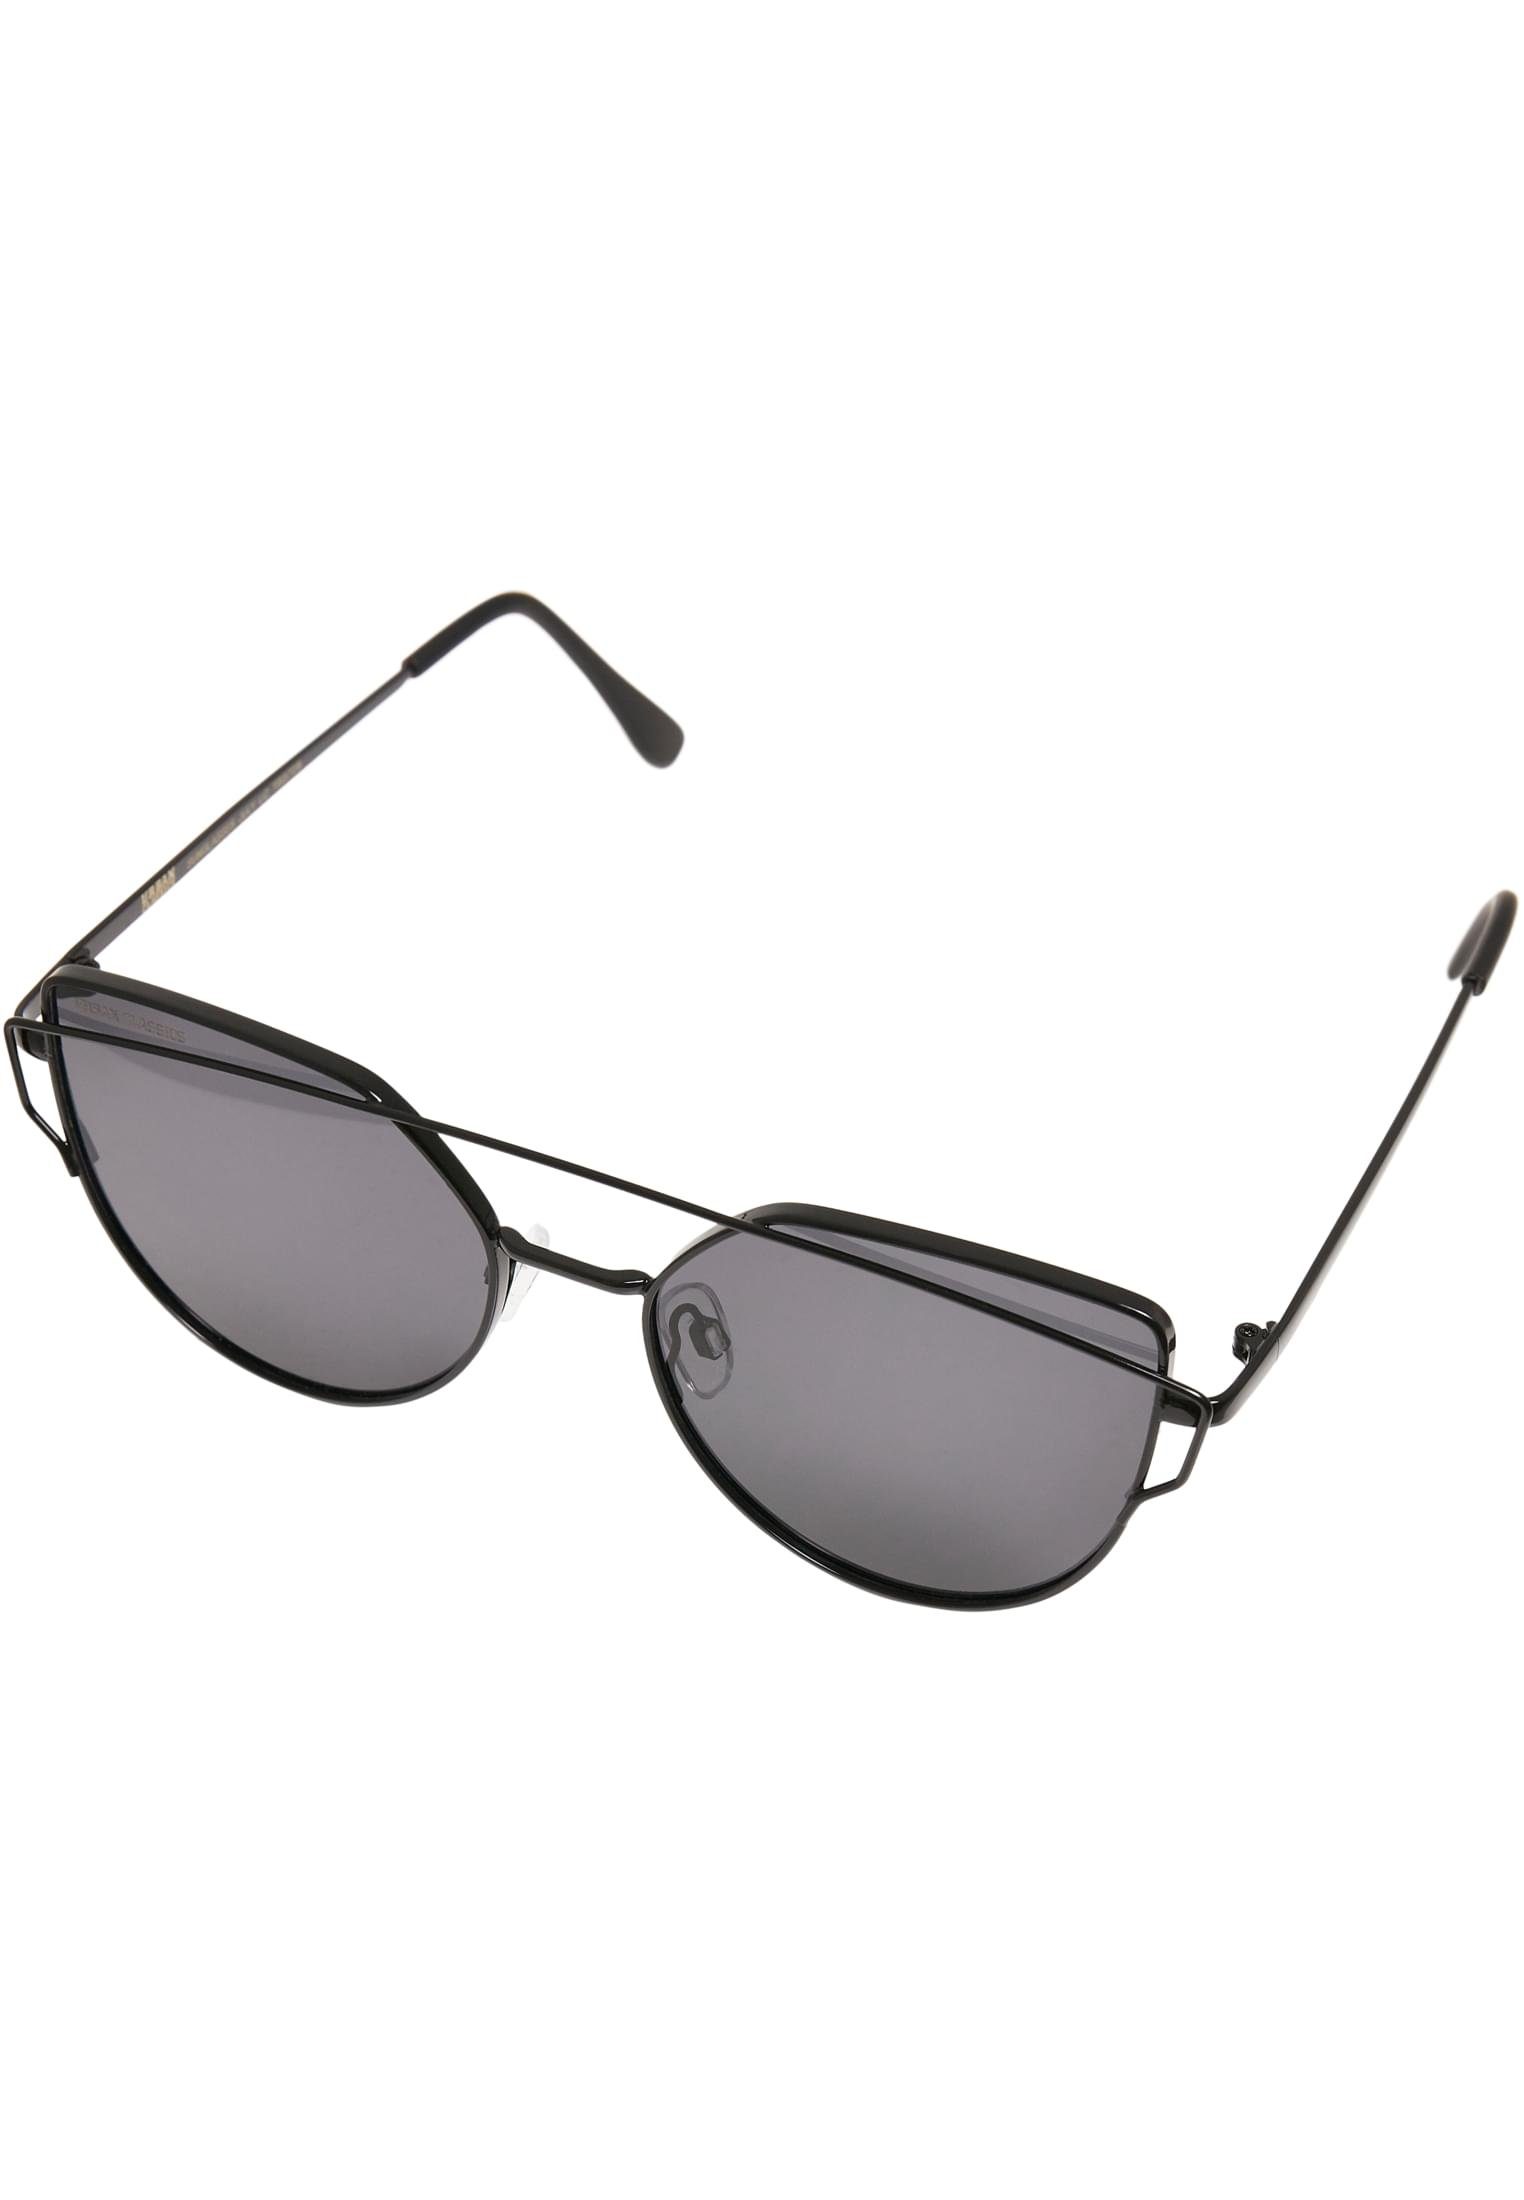 URBAN Sonnenbrille Accessoires July CLASSICS black UC Sunglasses